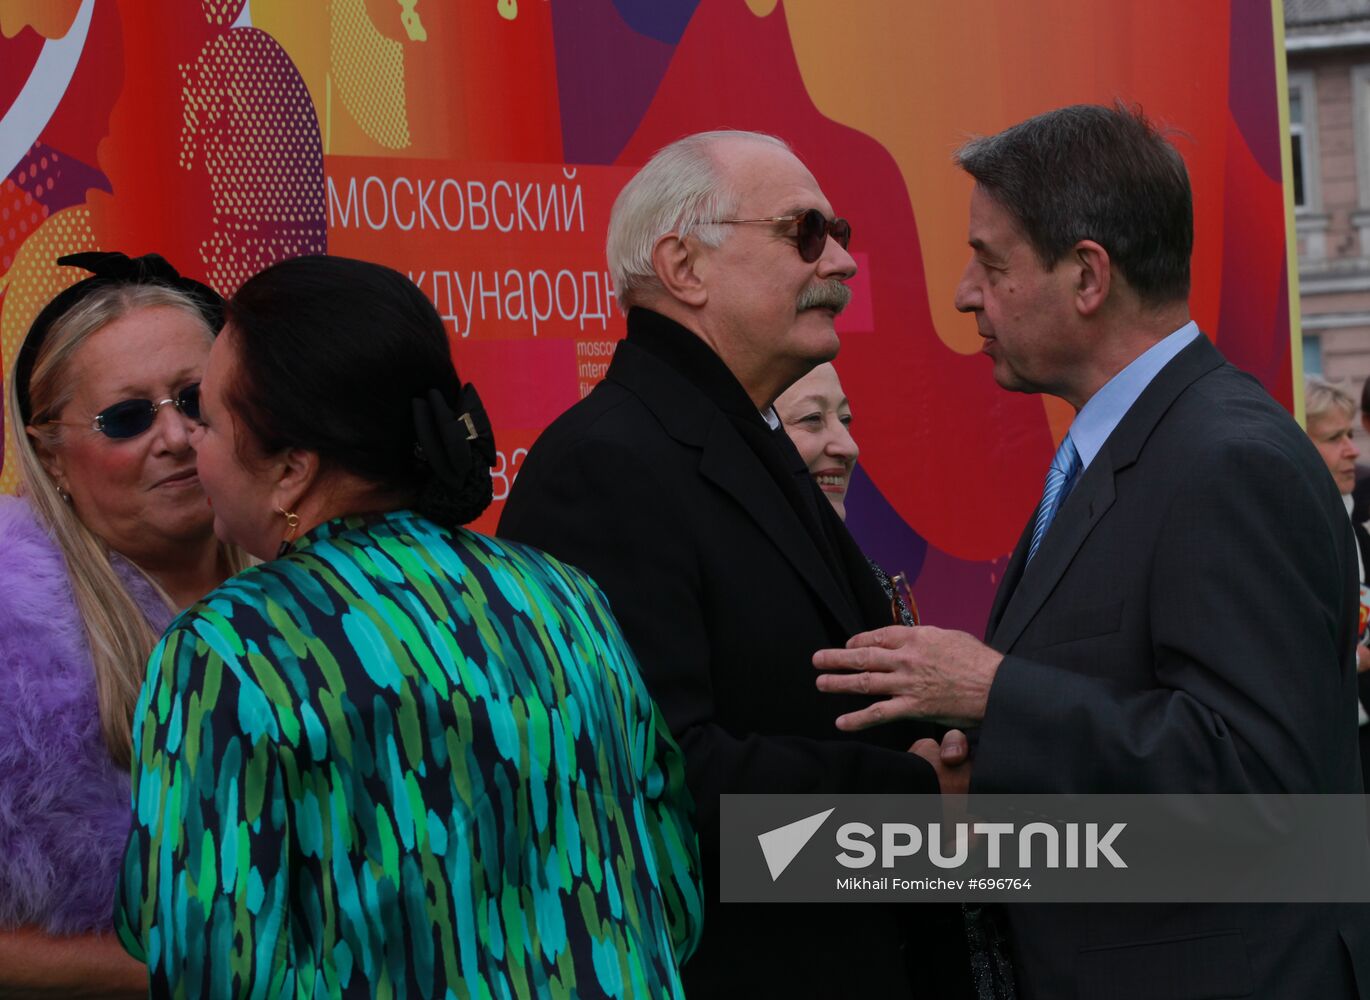 Alexander Avdeyev, Nikita Mikhalkov and Tatyana Mikhalkova